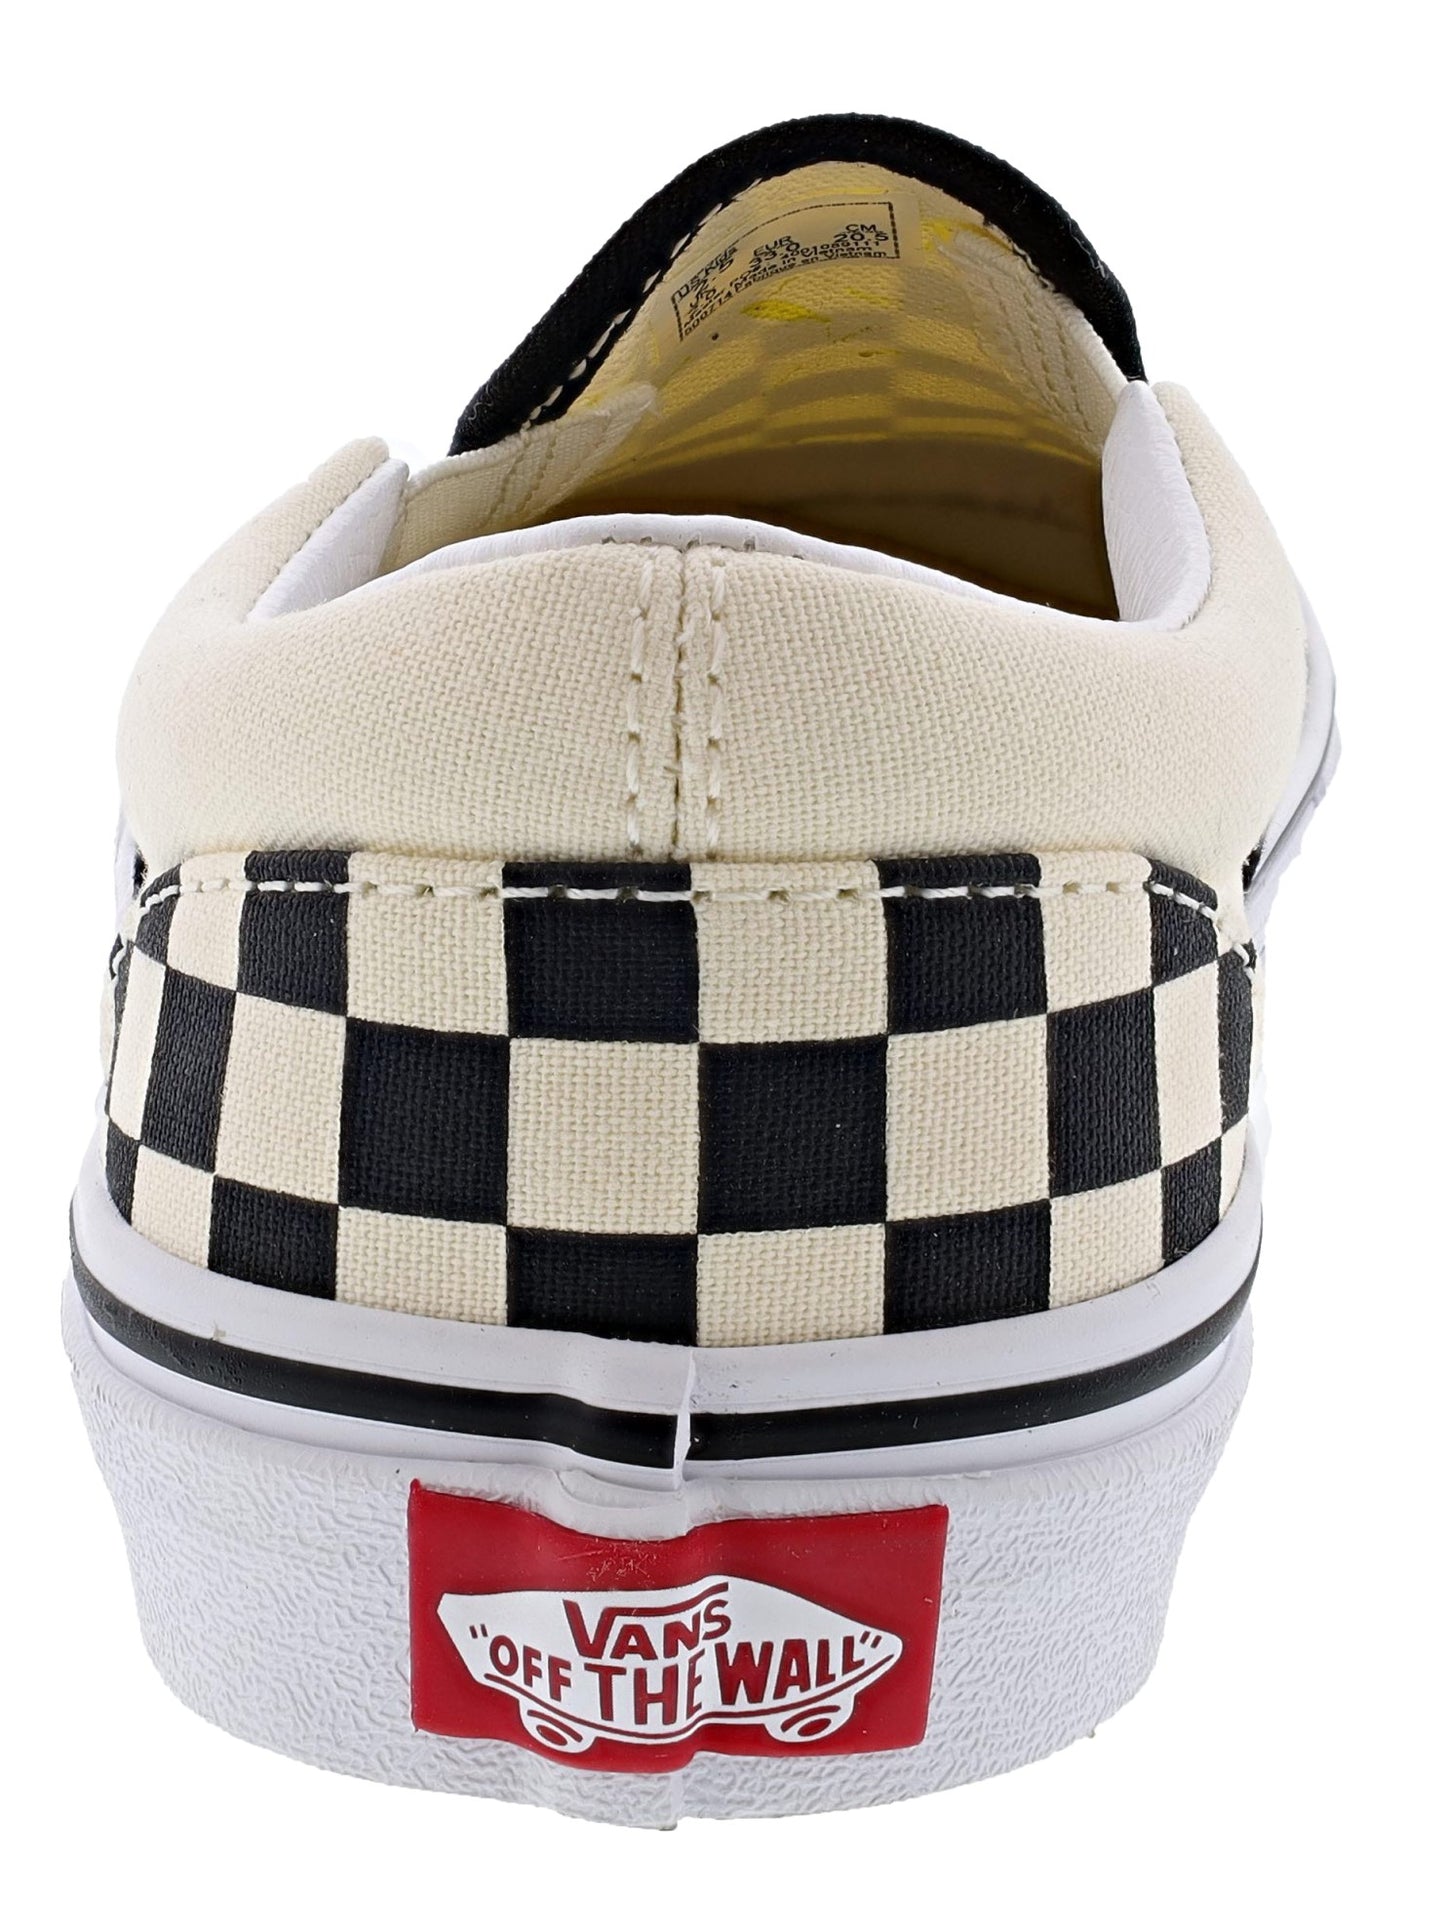 
                  
                    Vans Kid's Classic Slip On Vulcanized Rubber Shoes
                  
                